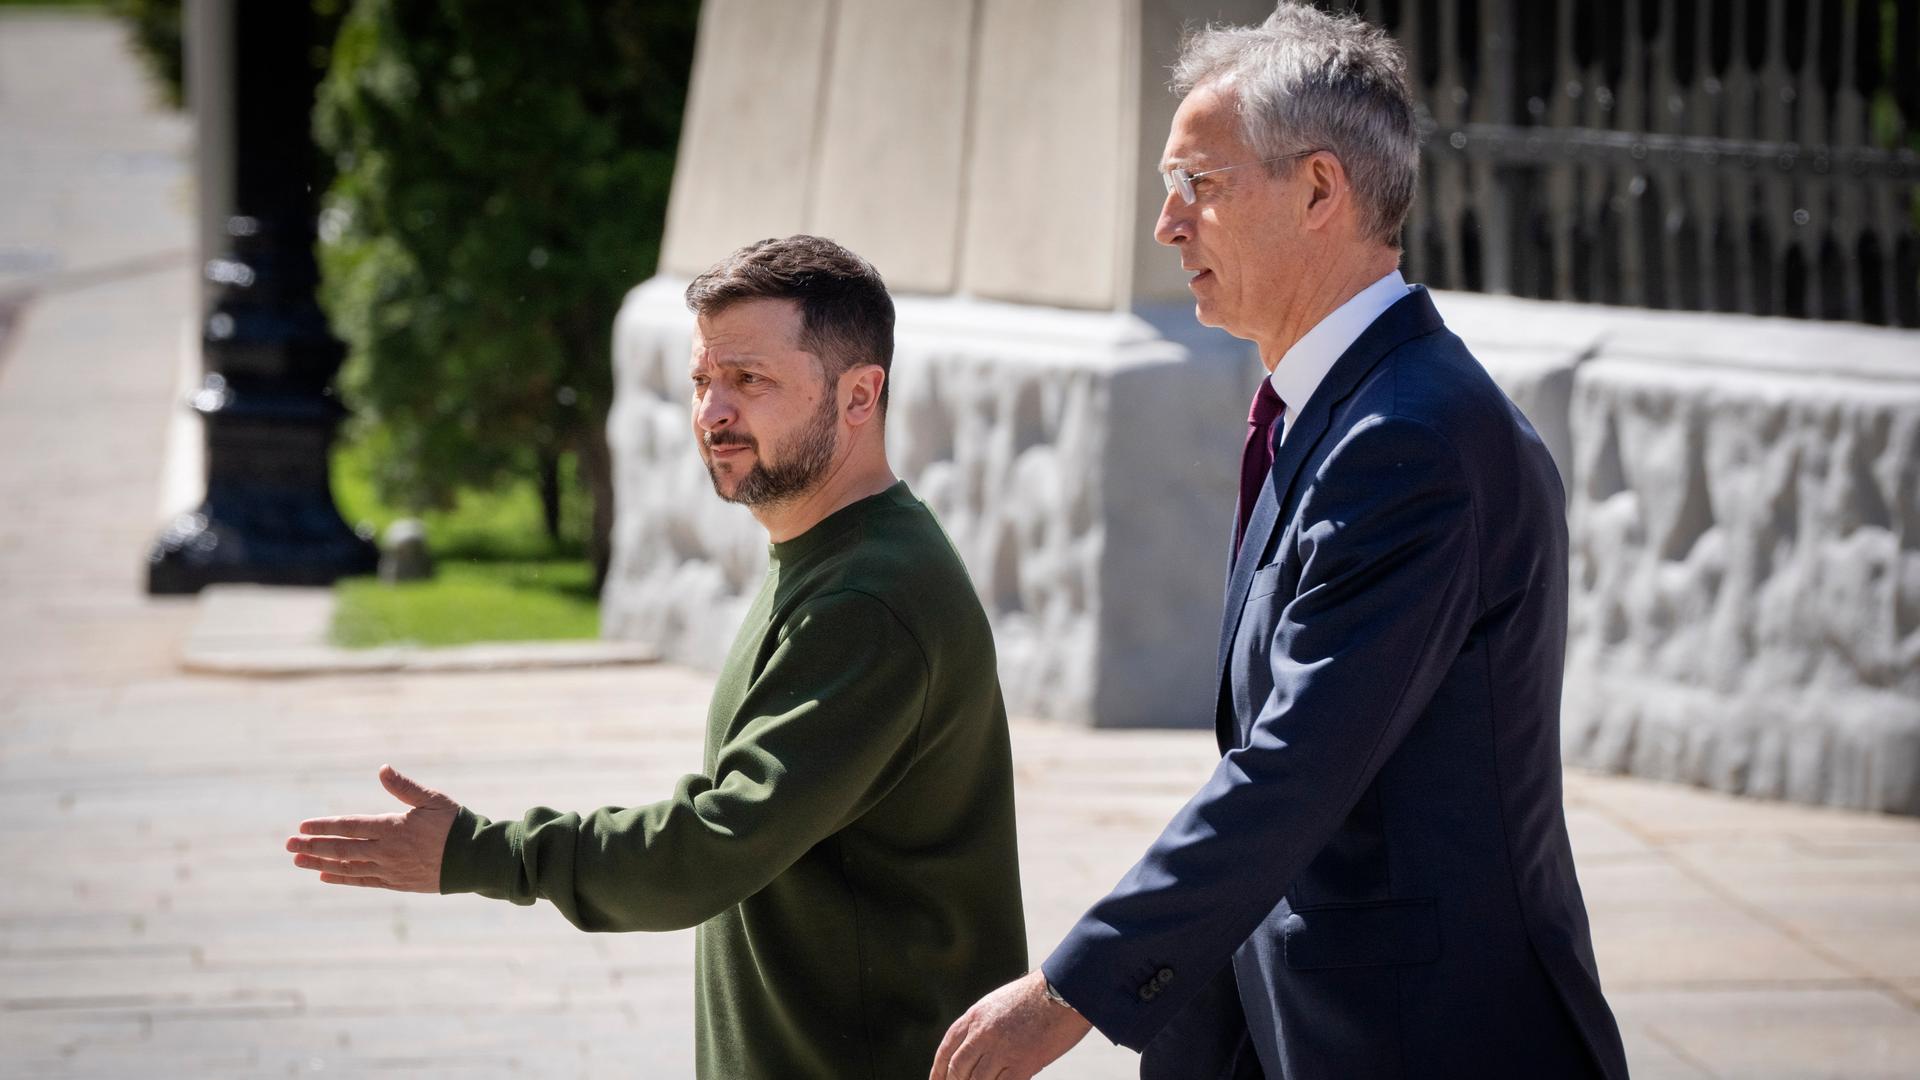 NATO-Generalsekretär Stoltenberg trifft in Kiew den ukrainischen Präsidenten Selenskyj. Beide laufen nebeneinander her, und Selenskyj weist Stoltenberg mit der linken Hand den Weg.